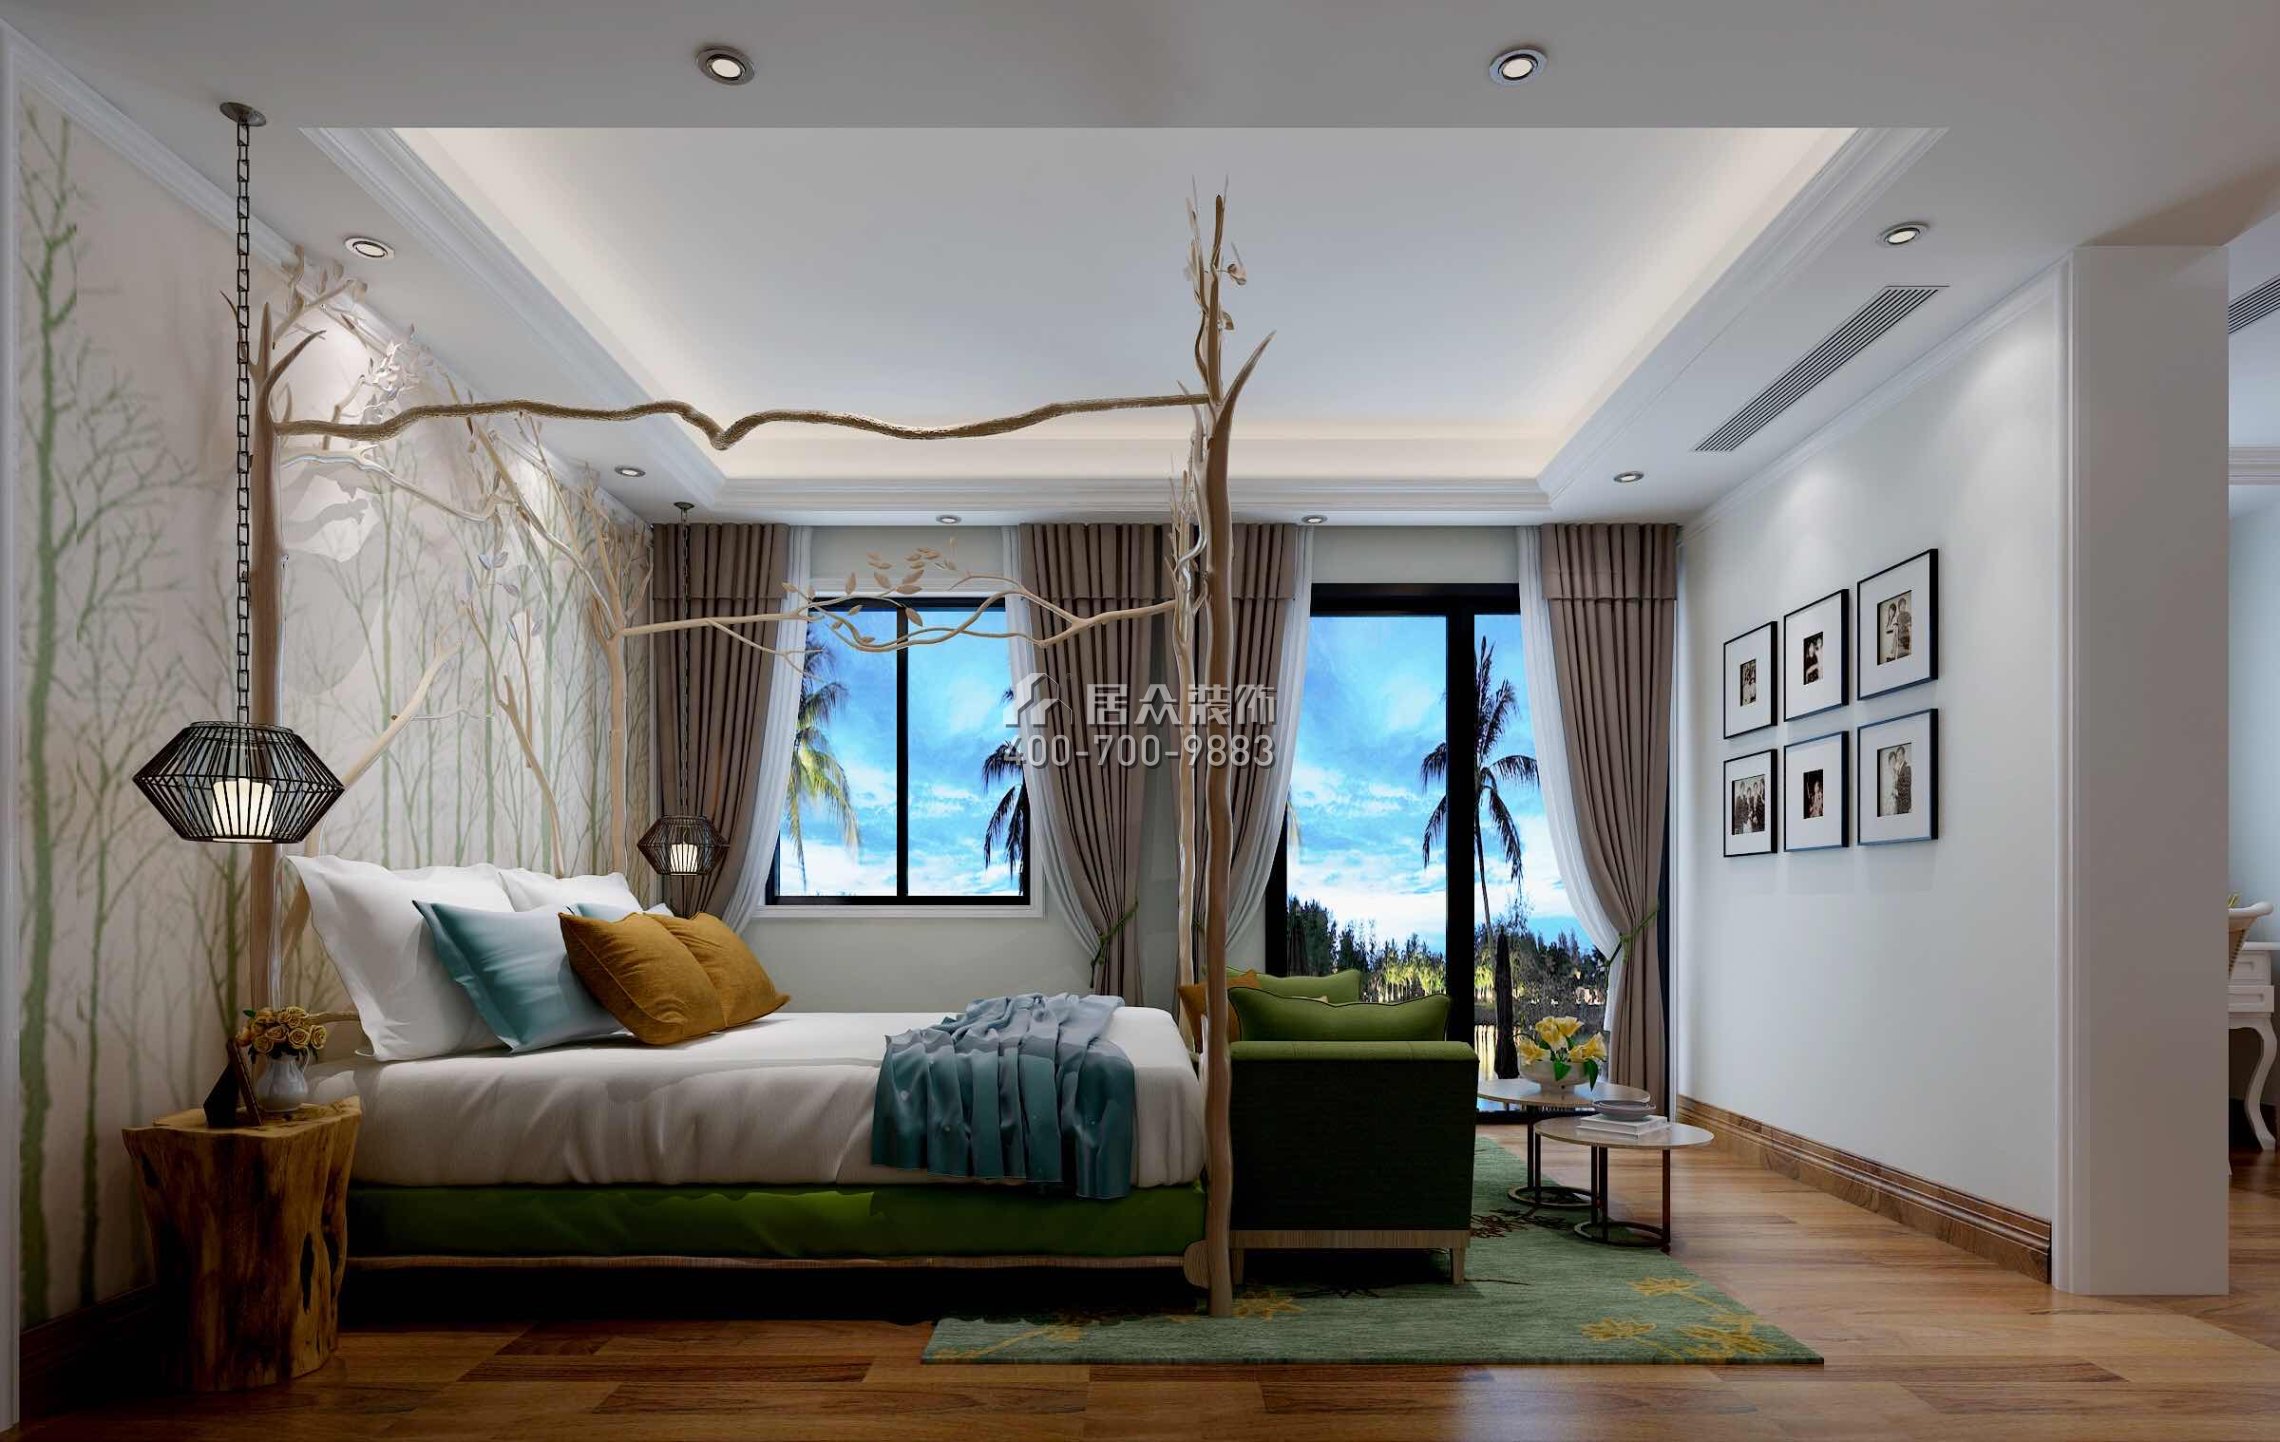 丽水佳园560平方米混搭风格别墅户型卧室装修效果图